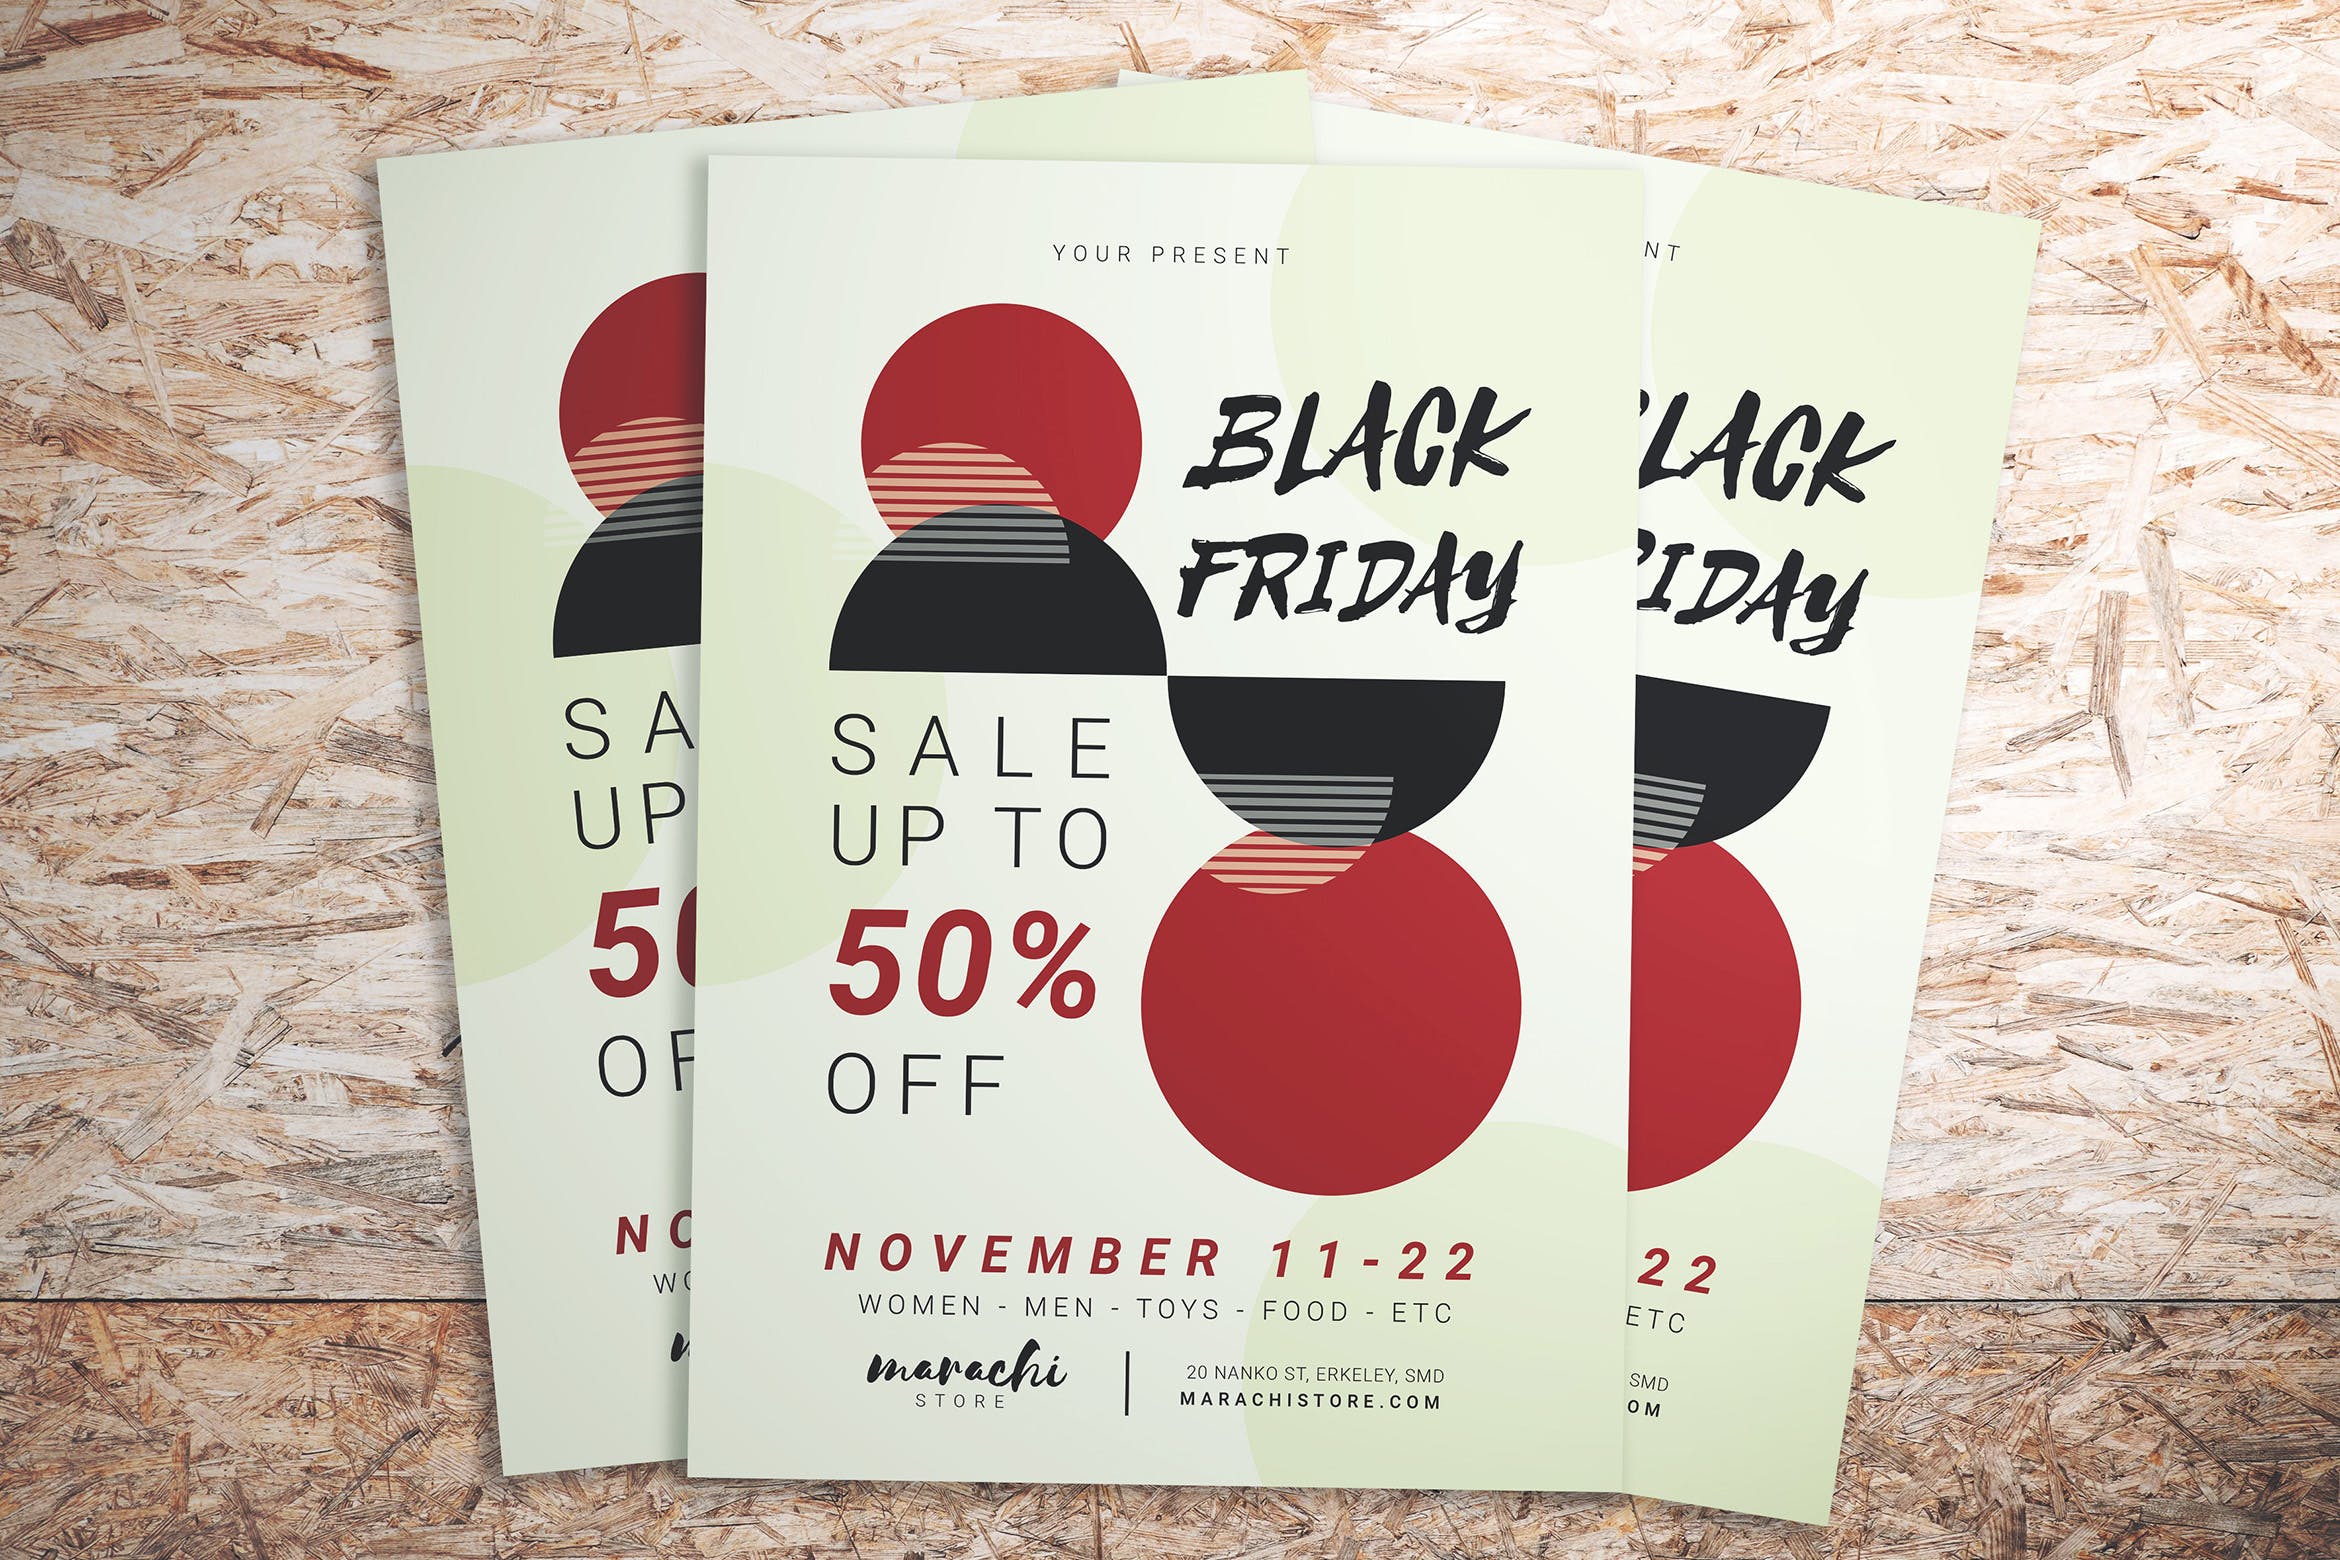 极简主义设计风格黒五购物狂欢节活动海报传单模板 Black Friday Minimalist Flyer插图